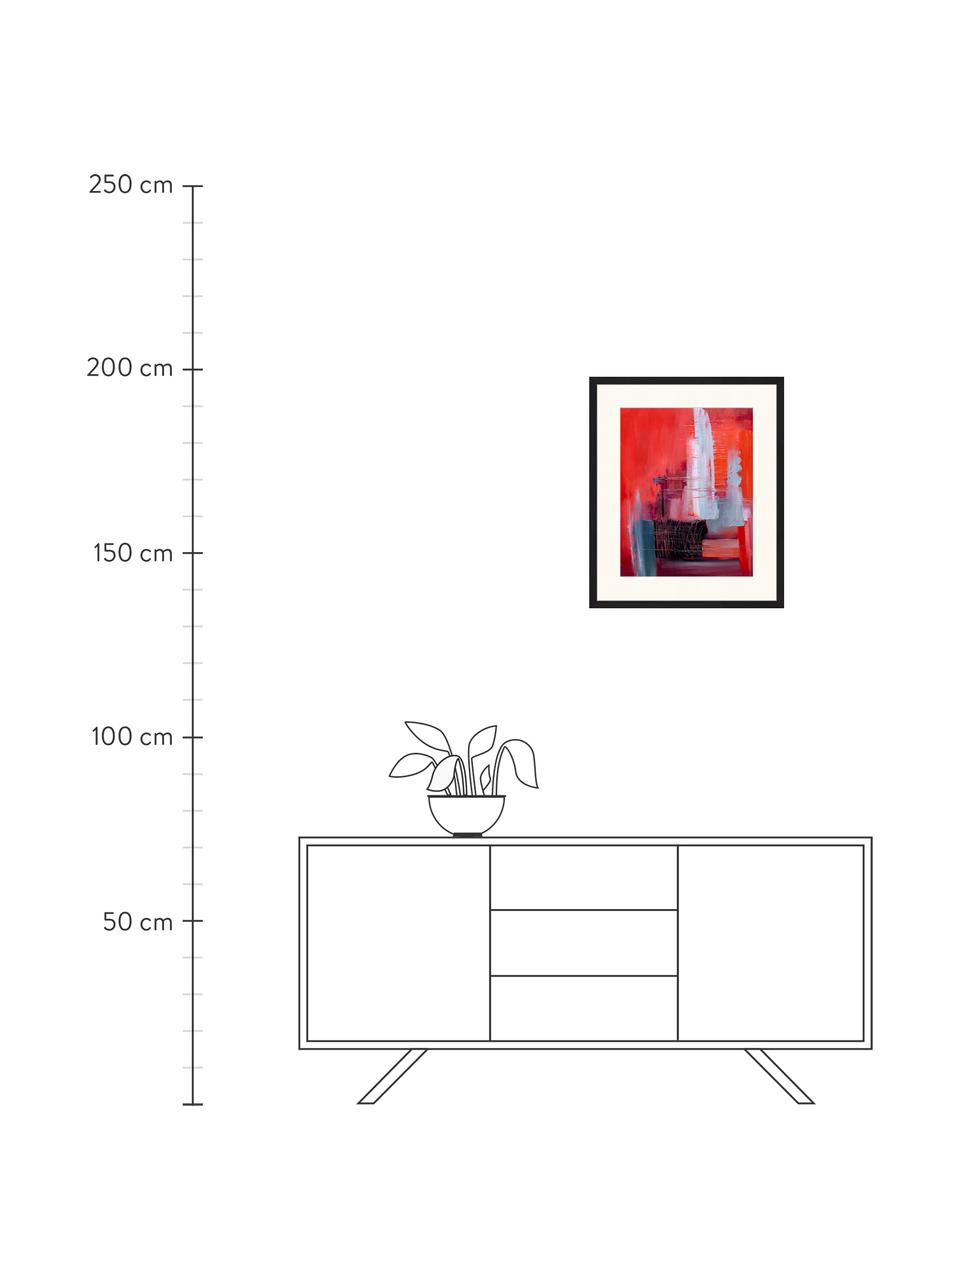 Gerahmter Digitaldruck Abstract Red Art, Bild: Digitaldruck auf Papier, , Rahmen: Holz, lackiert, Front: Plexiglas, Mehrfarbig, B 53 x H 63 cm